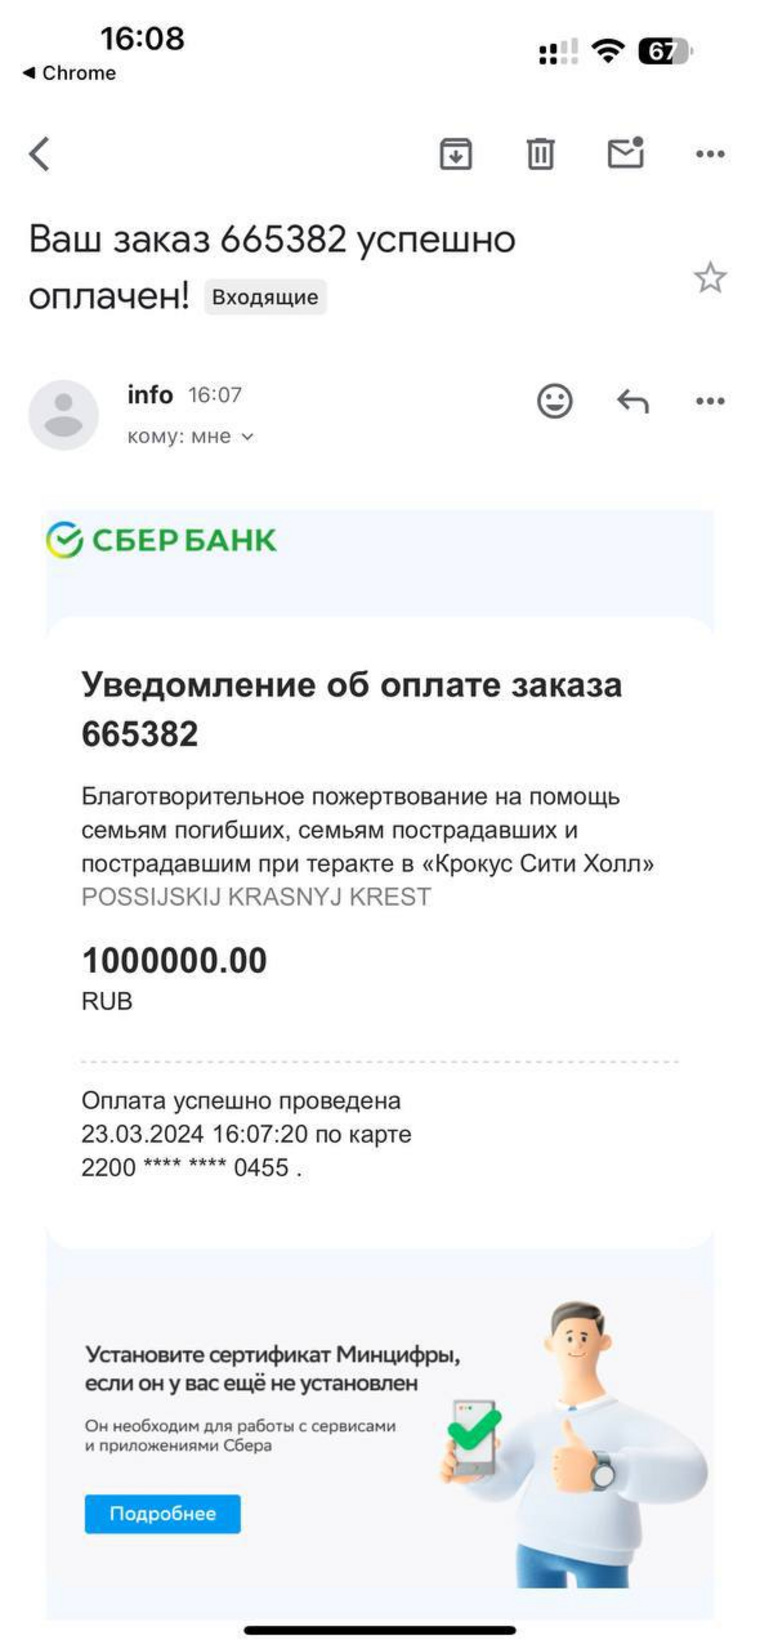 Инстасамка разместила скриншот о переводе средств жертвам трагедии в Подмосковье